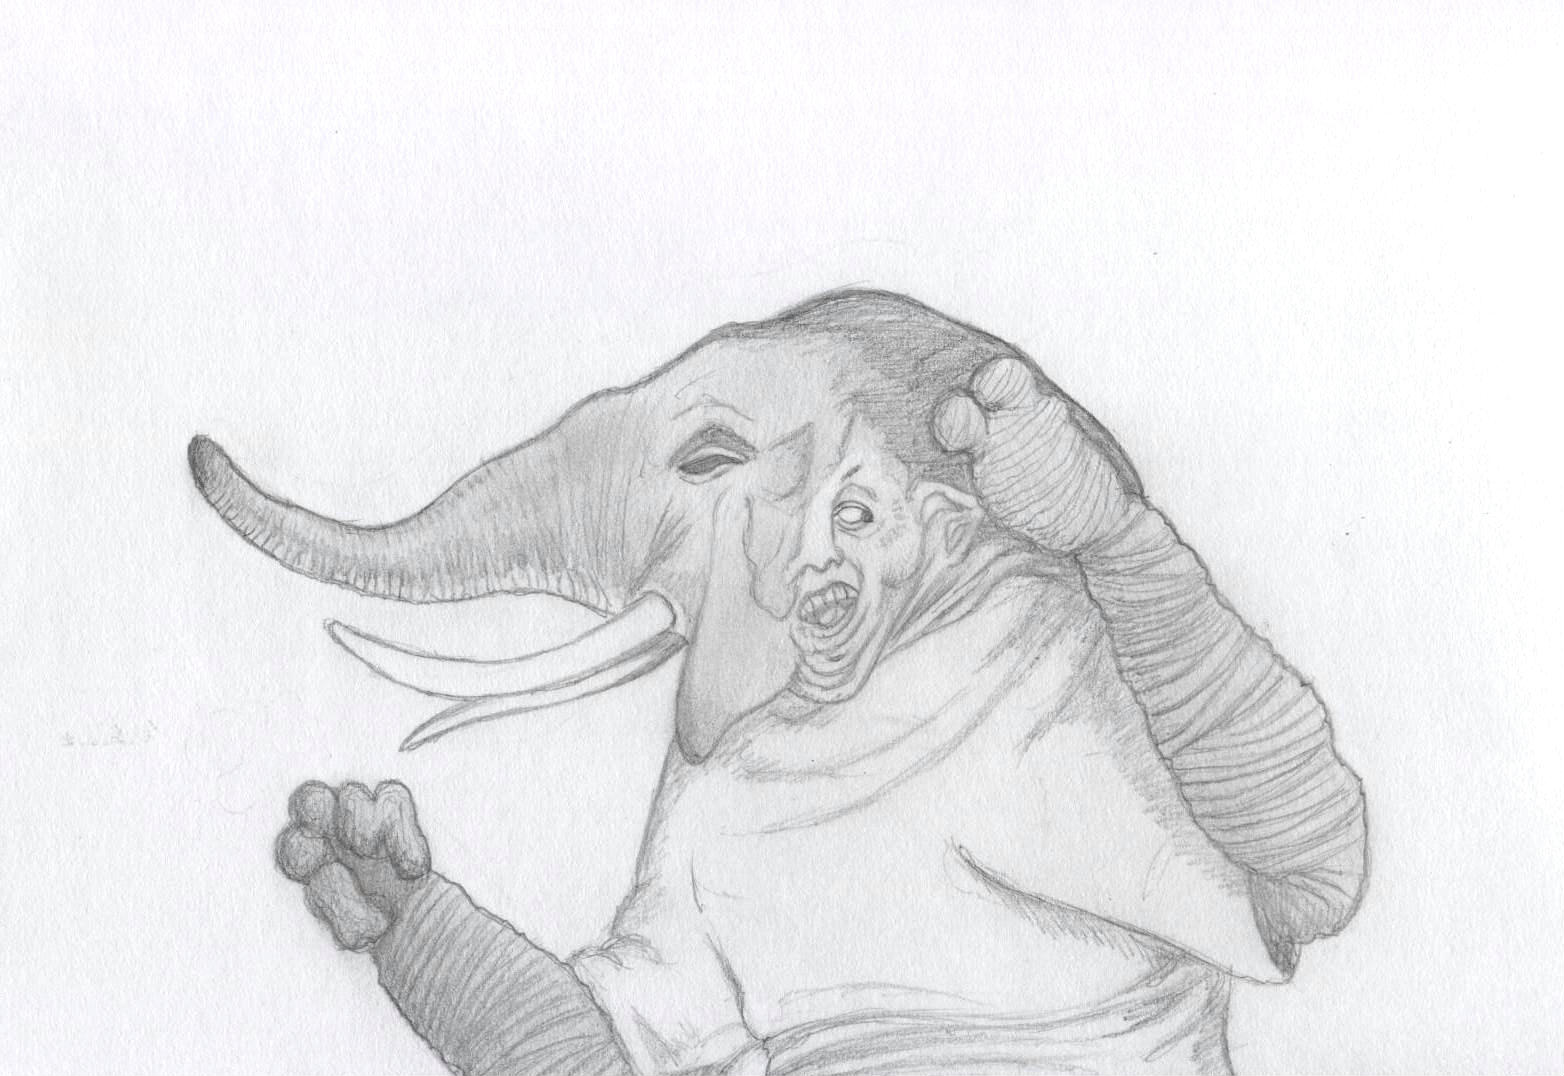 Elephant Un-Man by Ran_The_Hyena